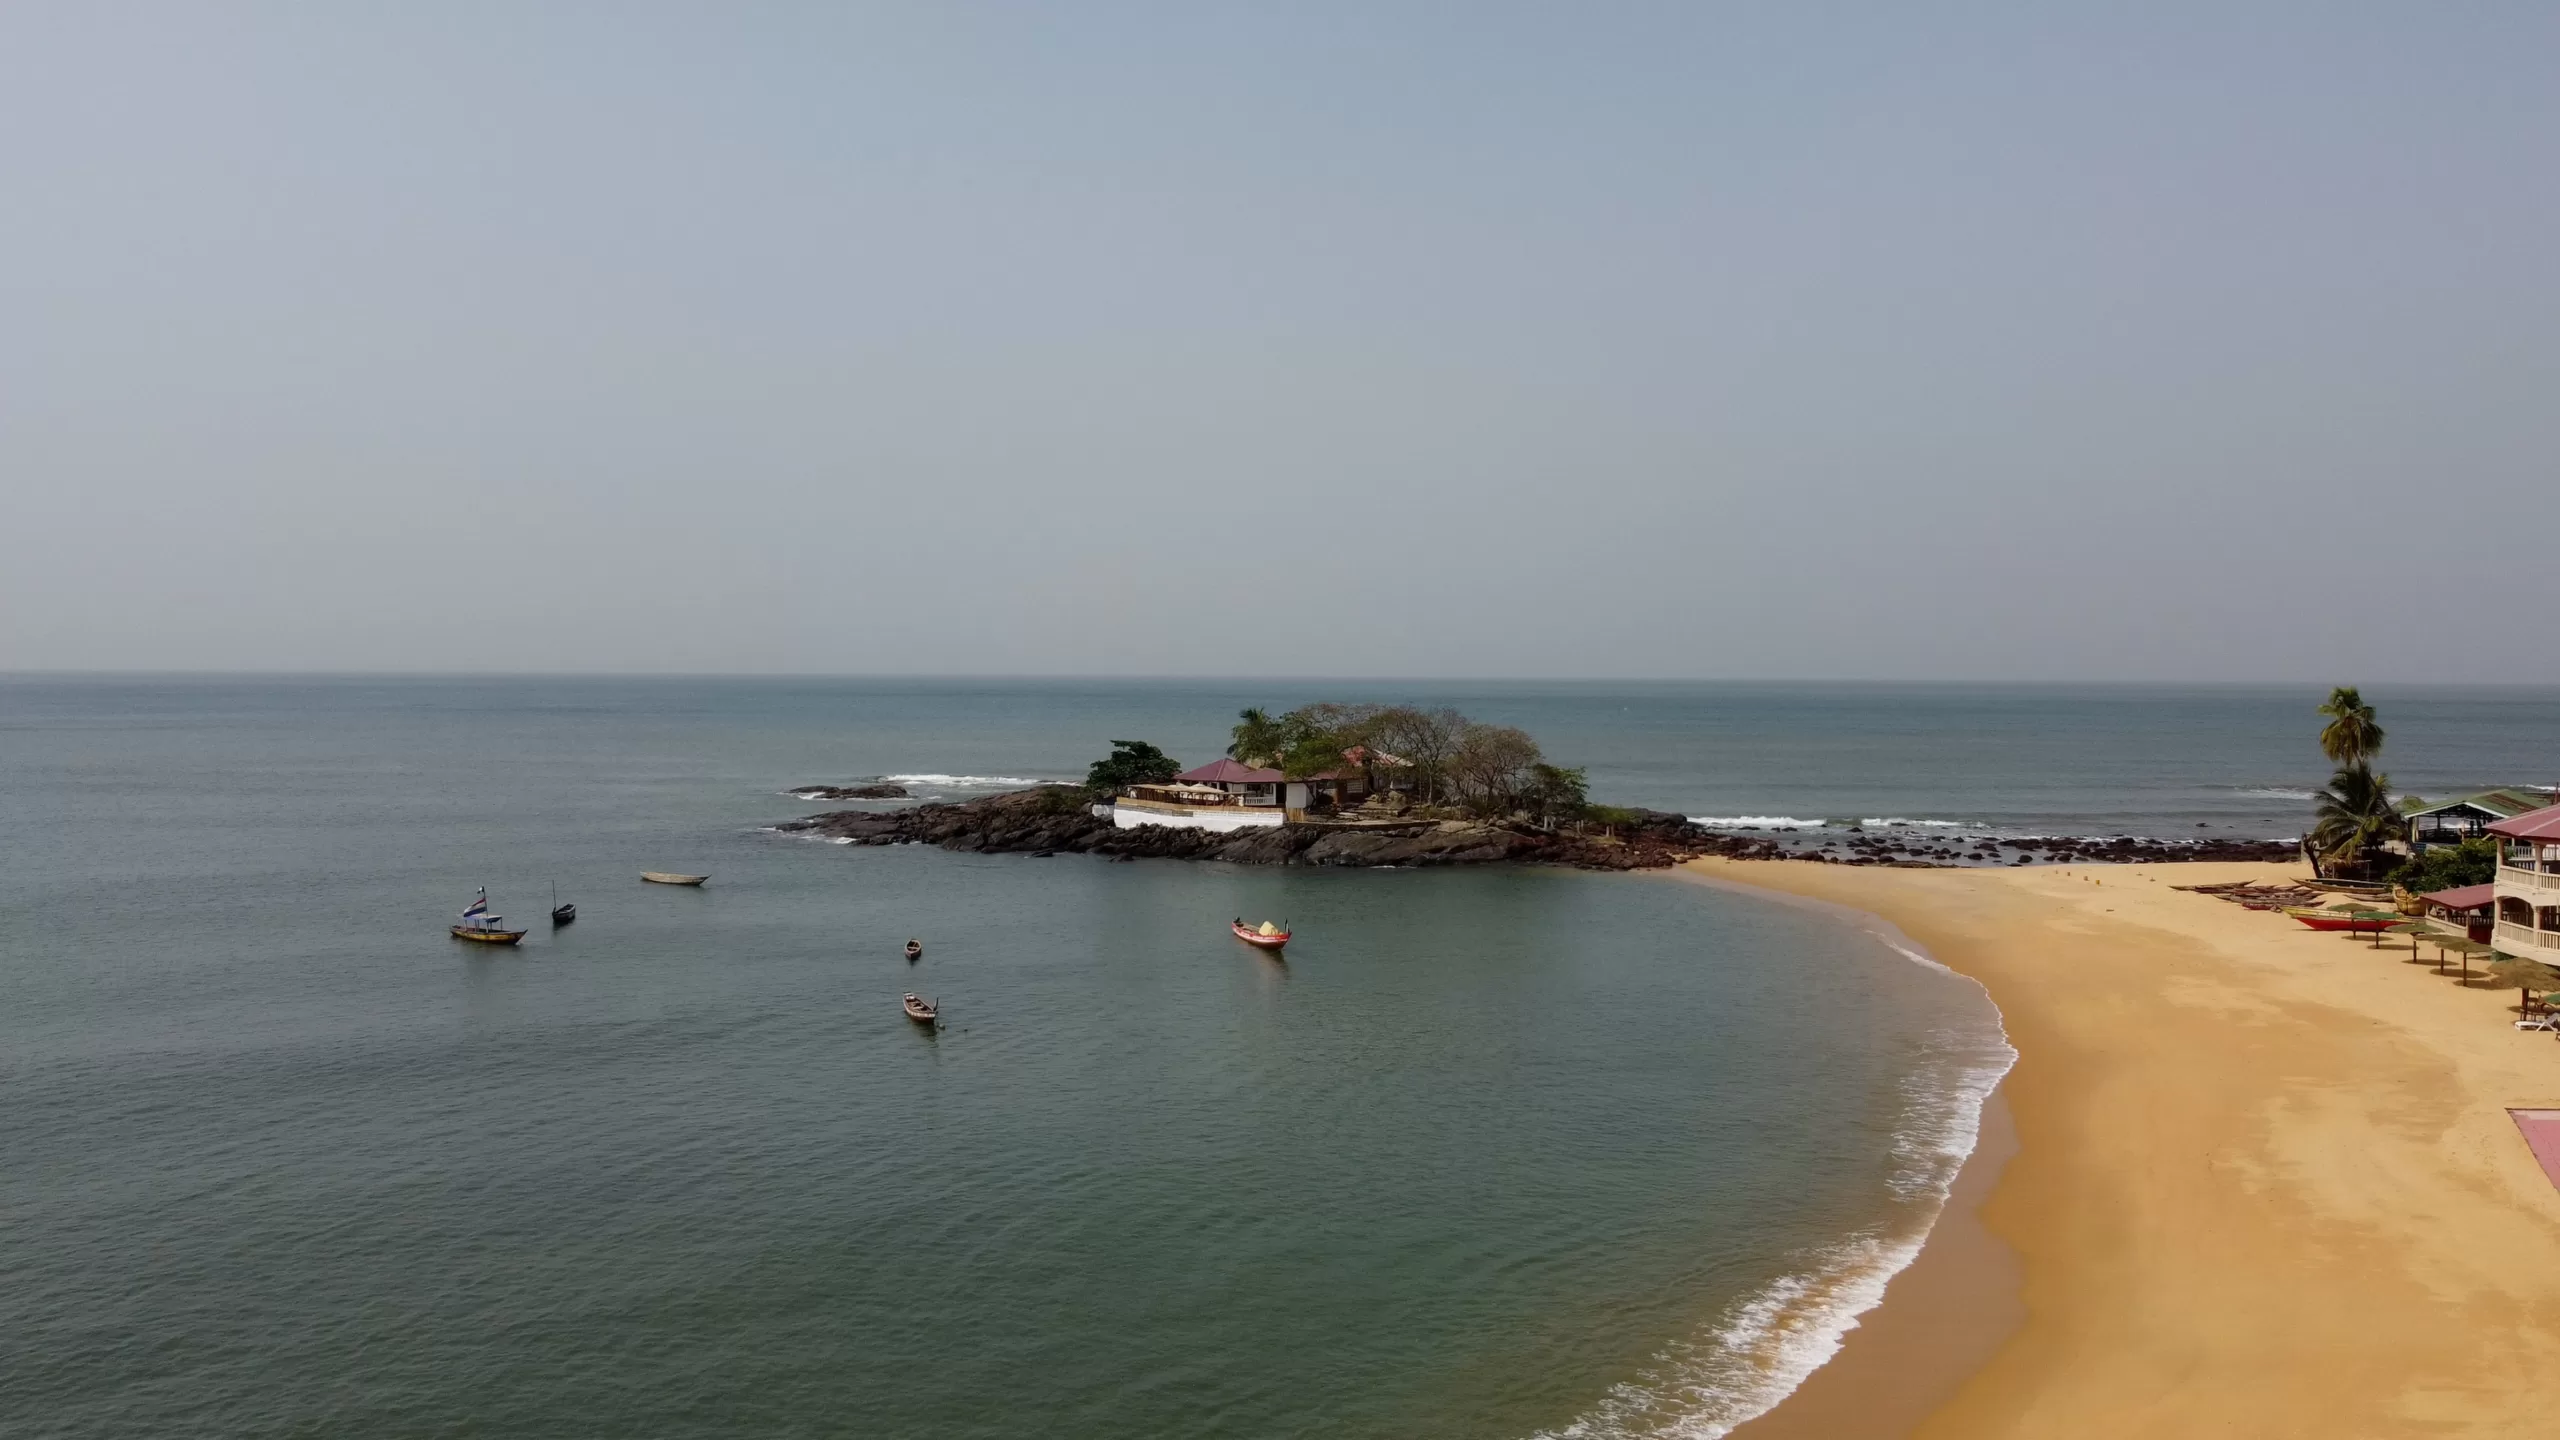 Lakka beach in Sierra Leone